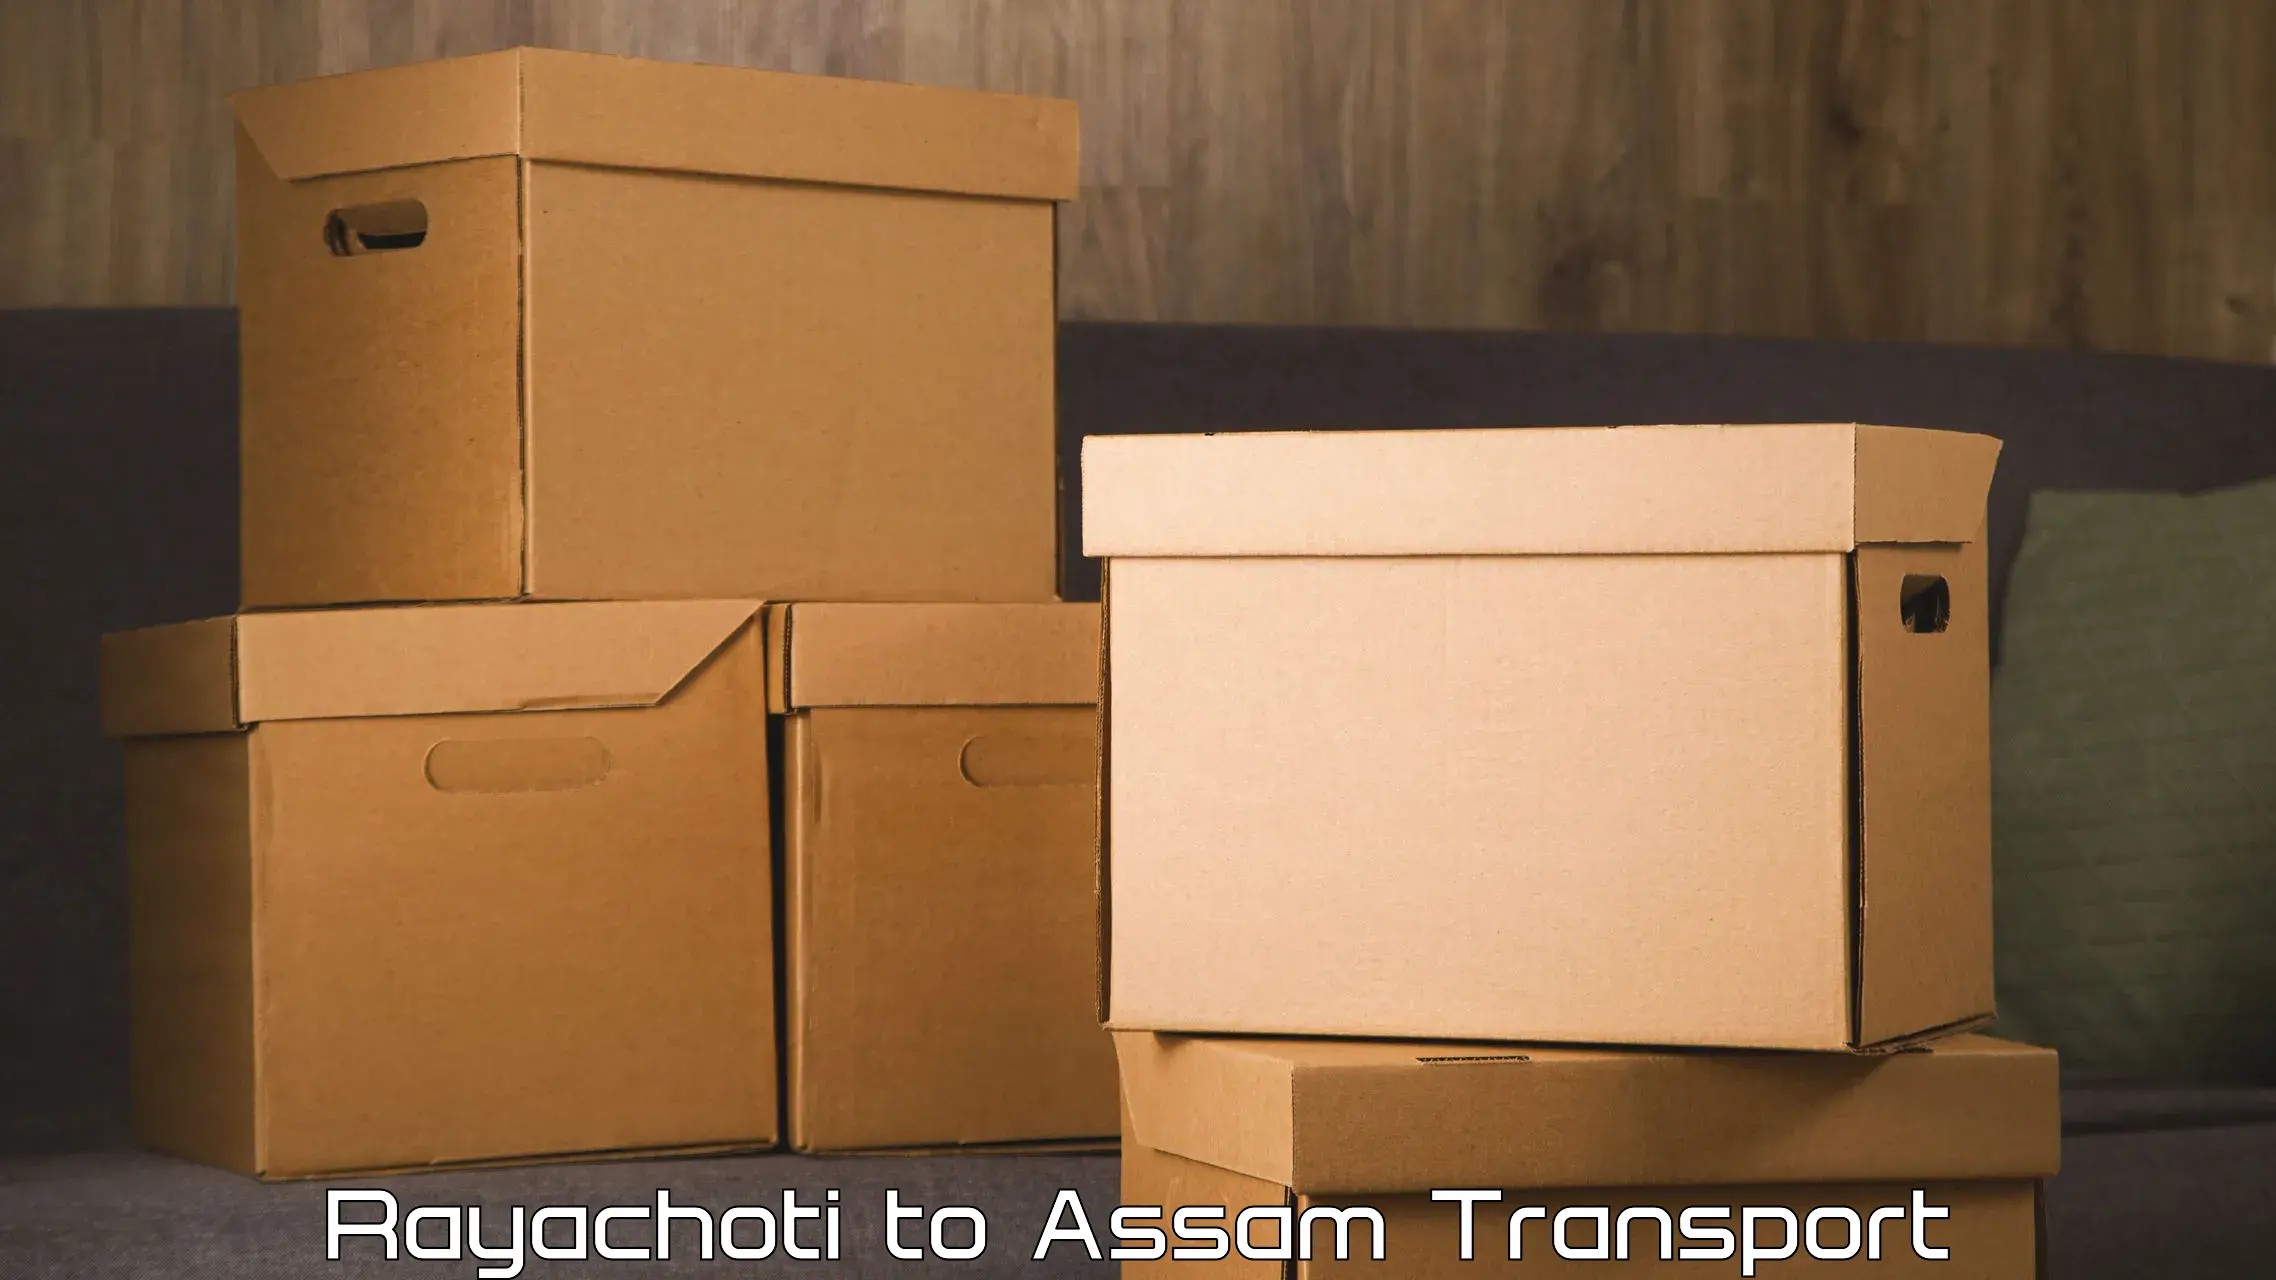 Furniture transport service Rayachoti to Rupai Siding